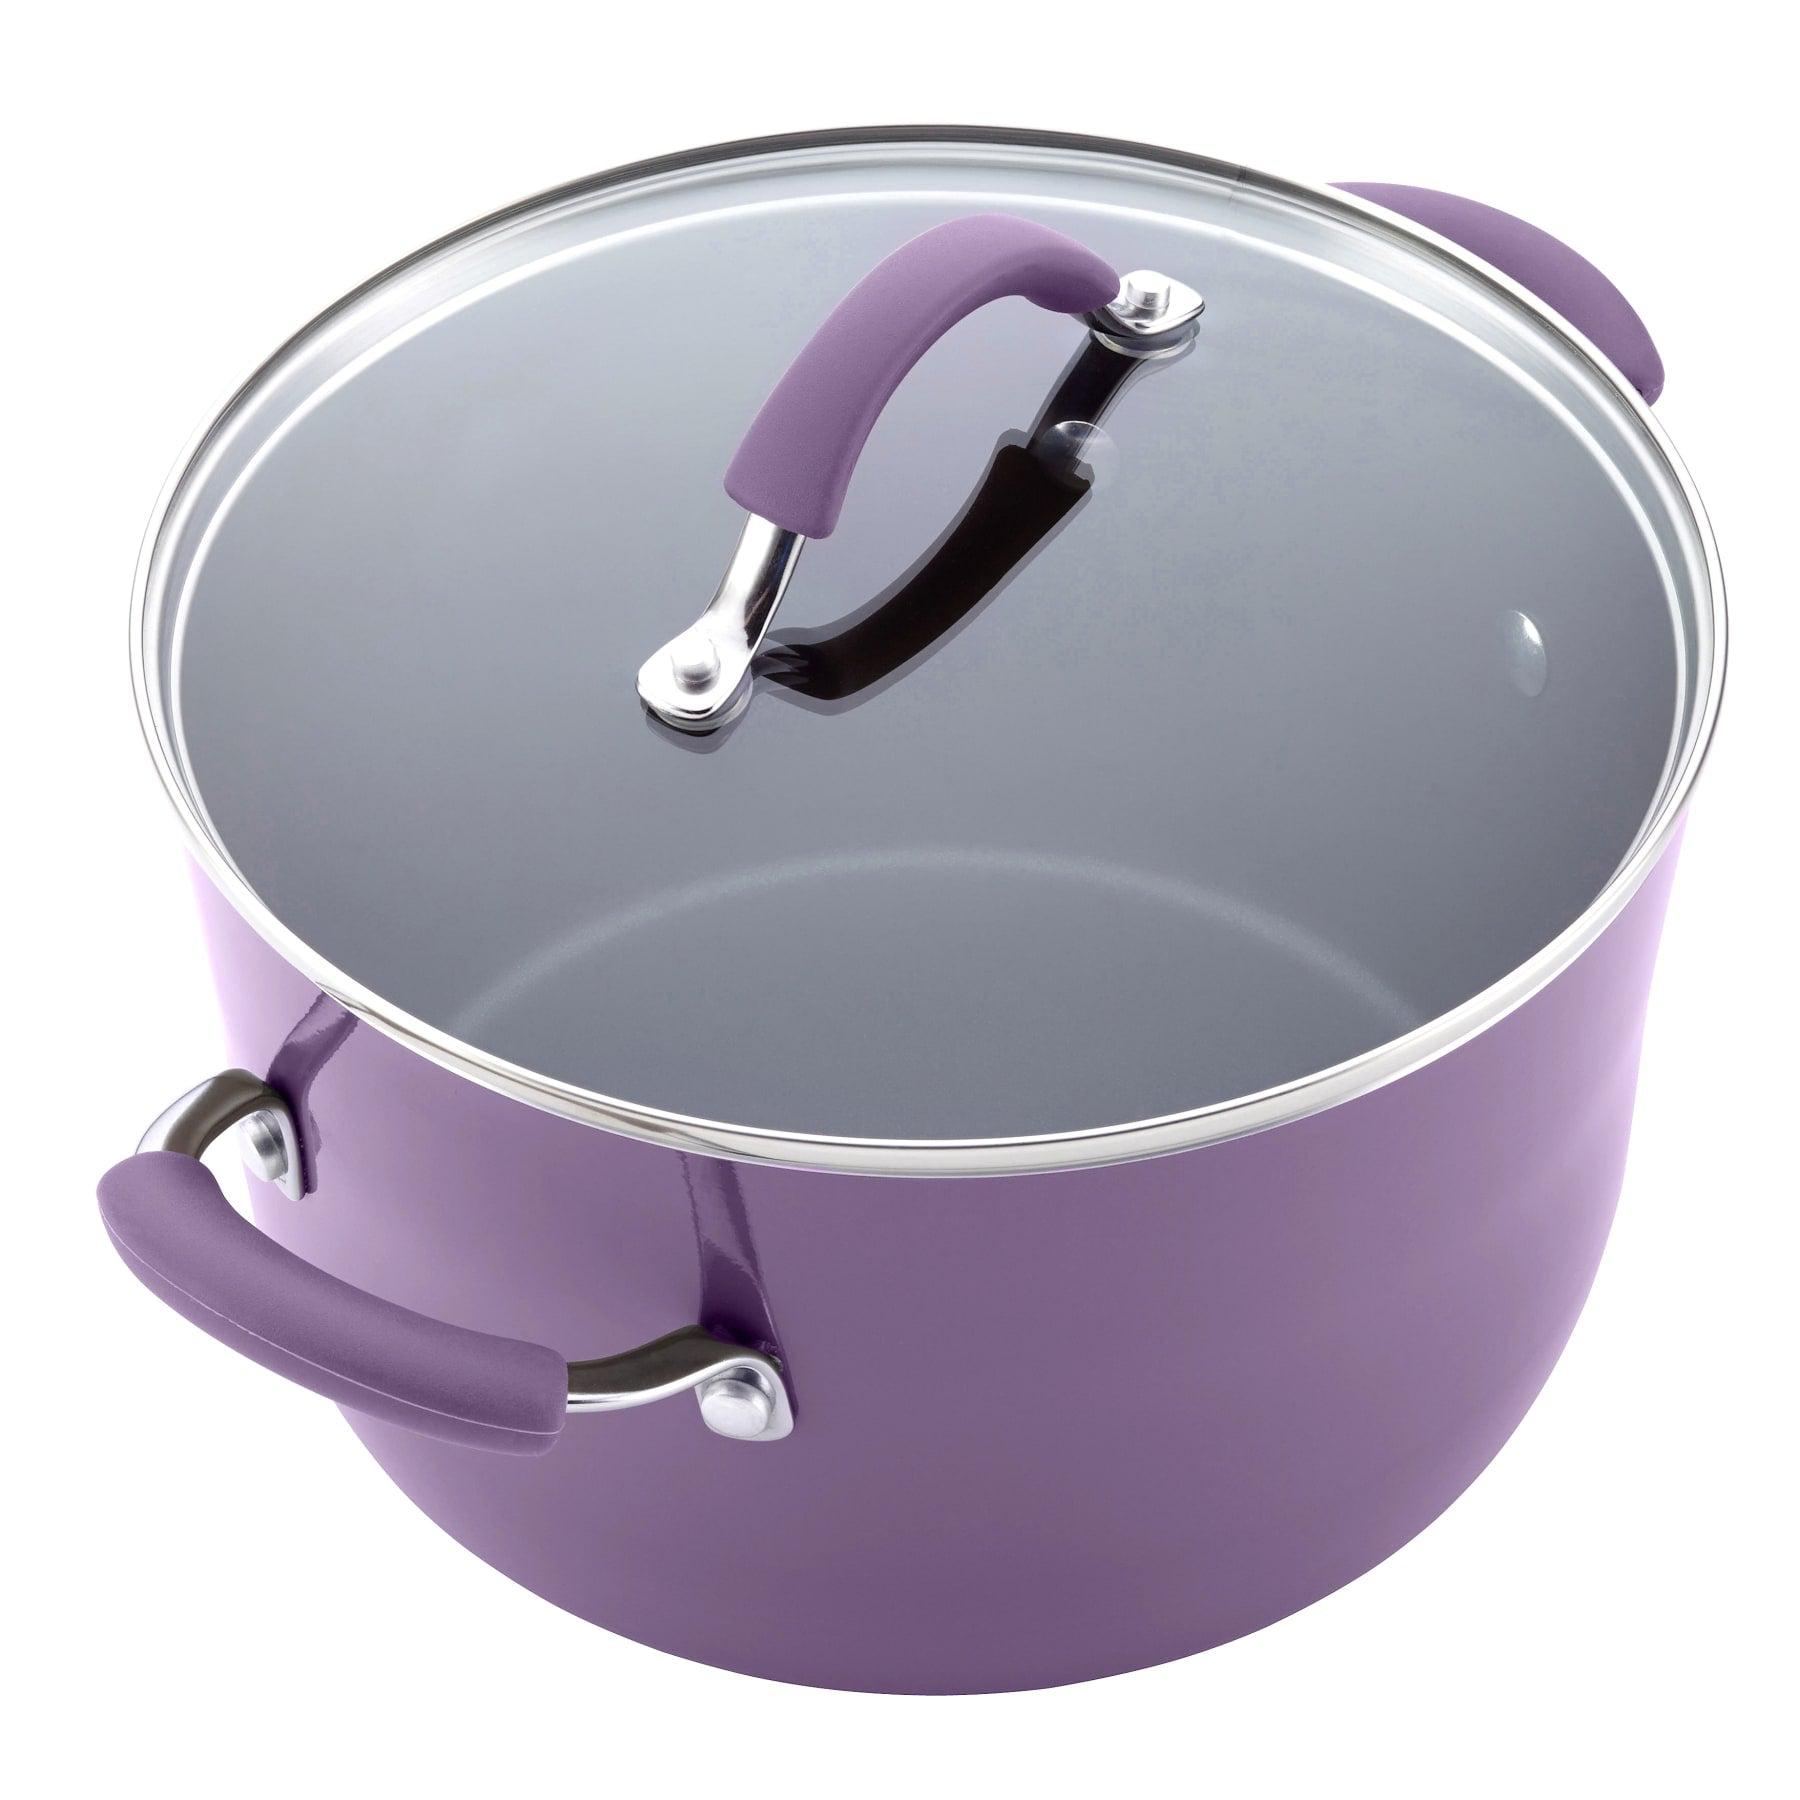 Nonstick Cookware Pots and Pans Set, 12 Piece, Lavender Purple